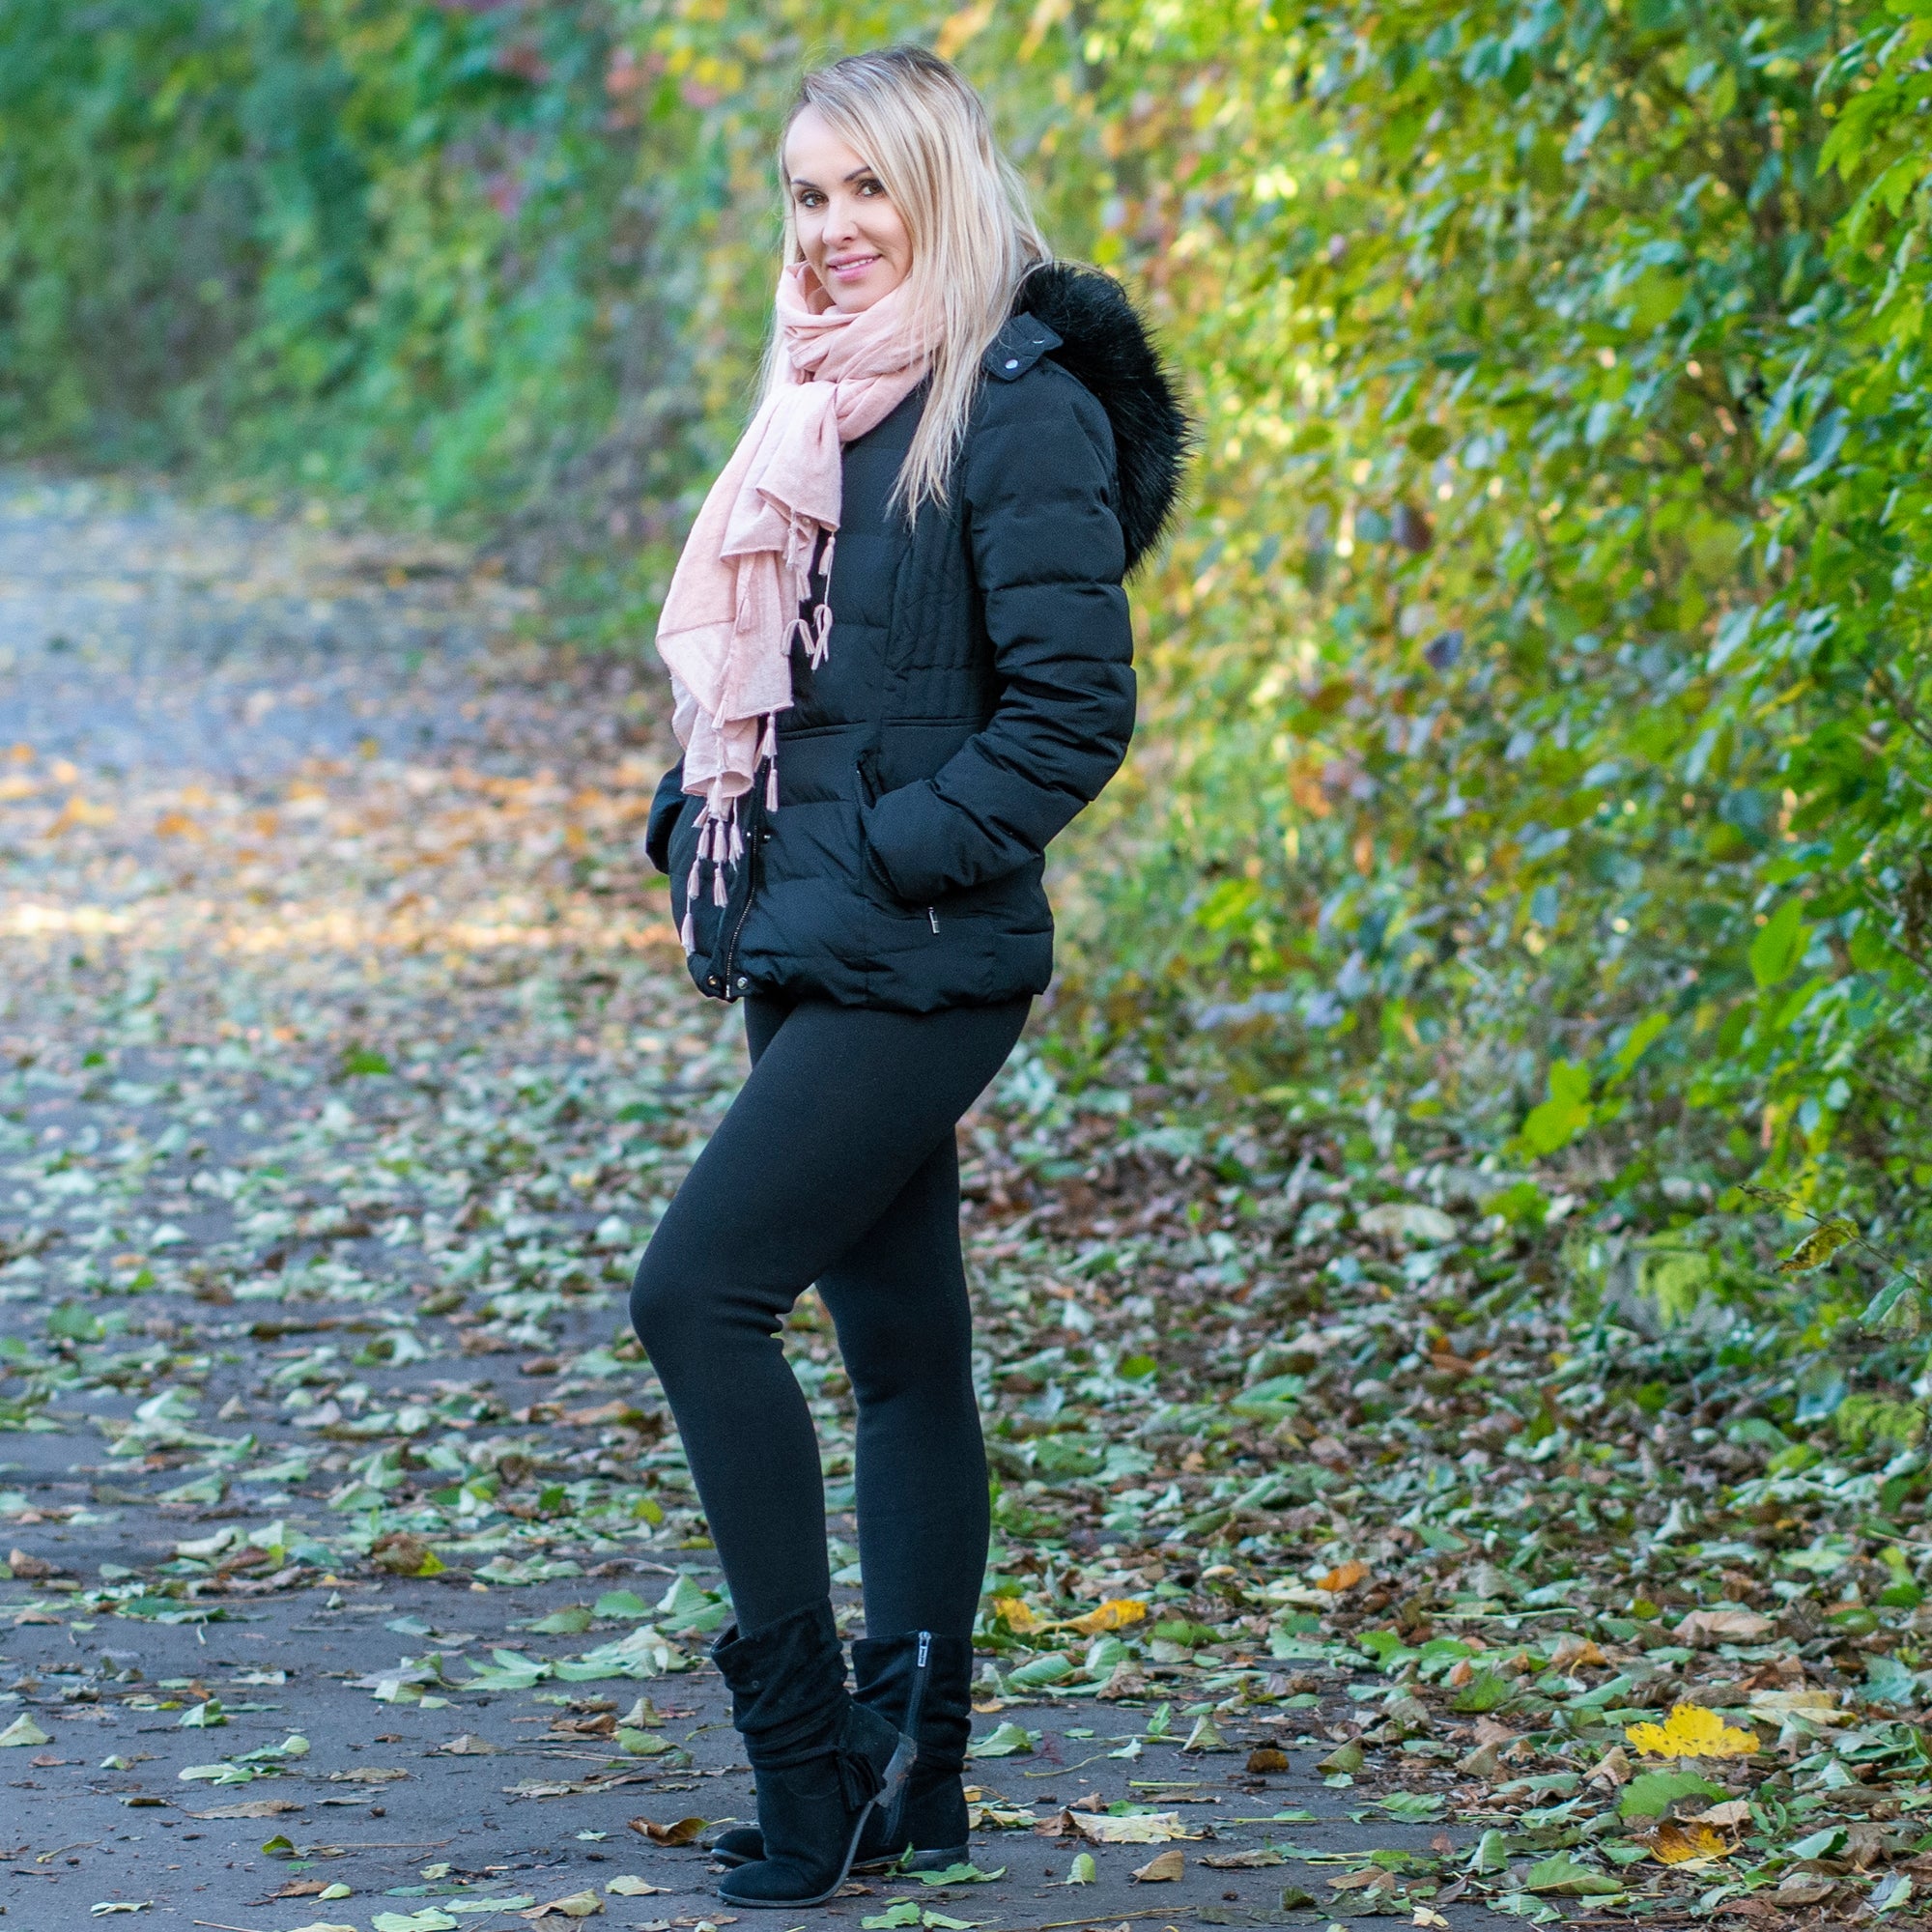 Ouye Women's Full Length Fleece Lining Thermal Leggings Black One